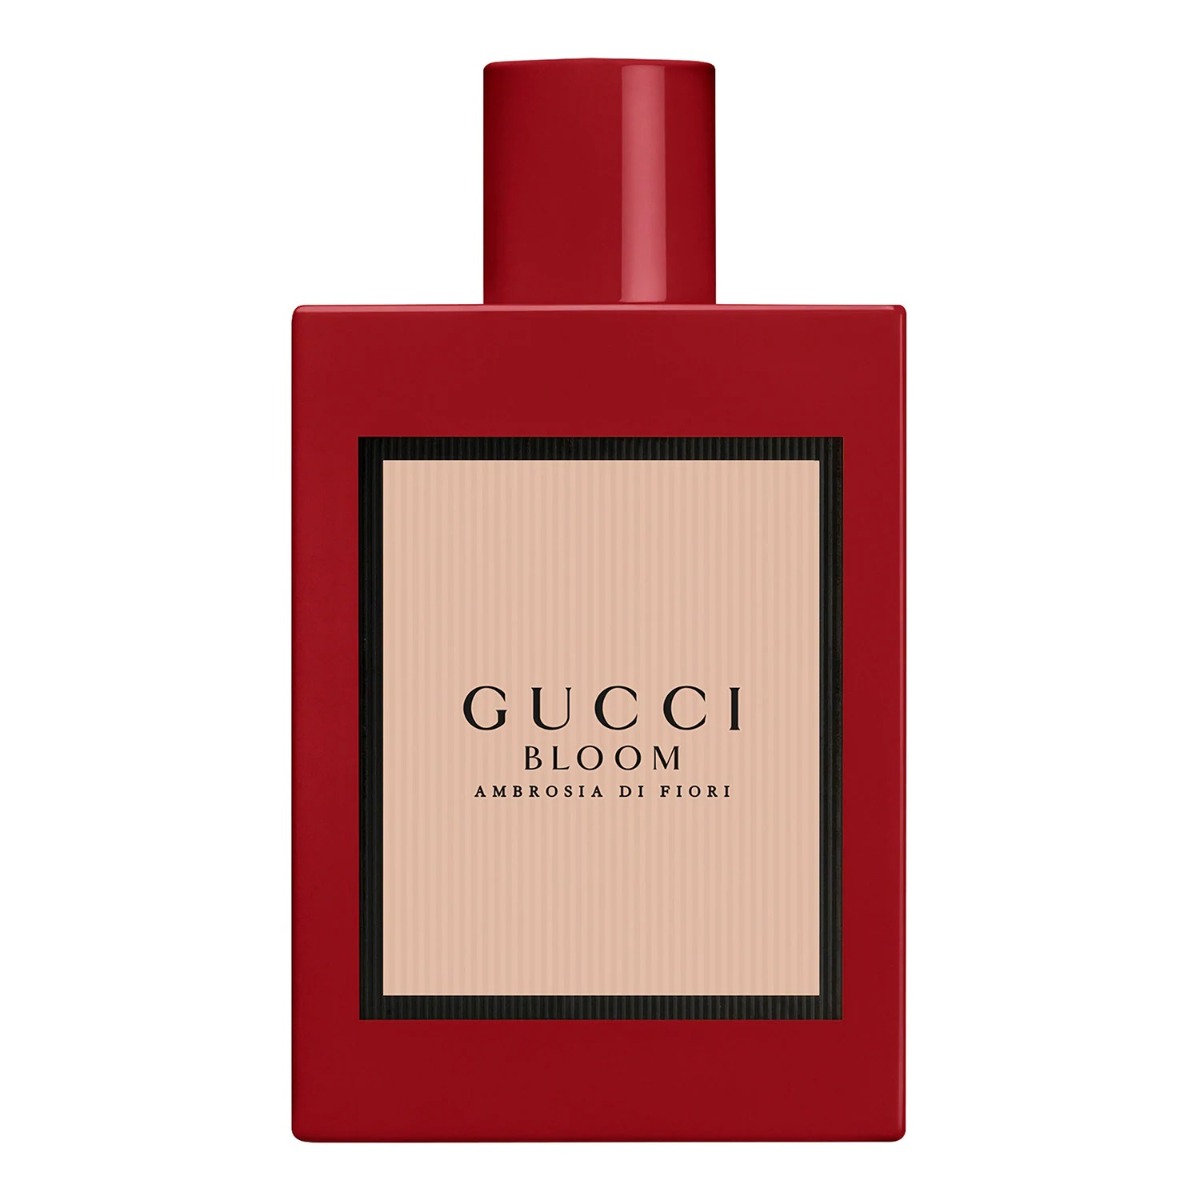 Gucci Bloom Ambrosia di Fiori Eau de Parfum-0